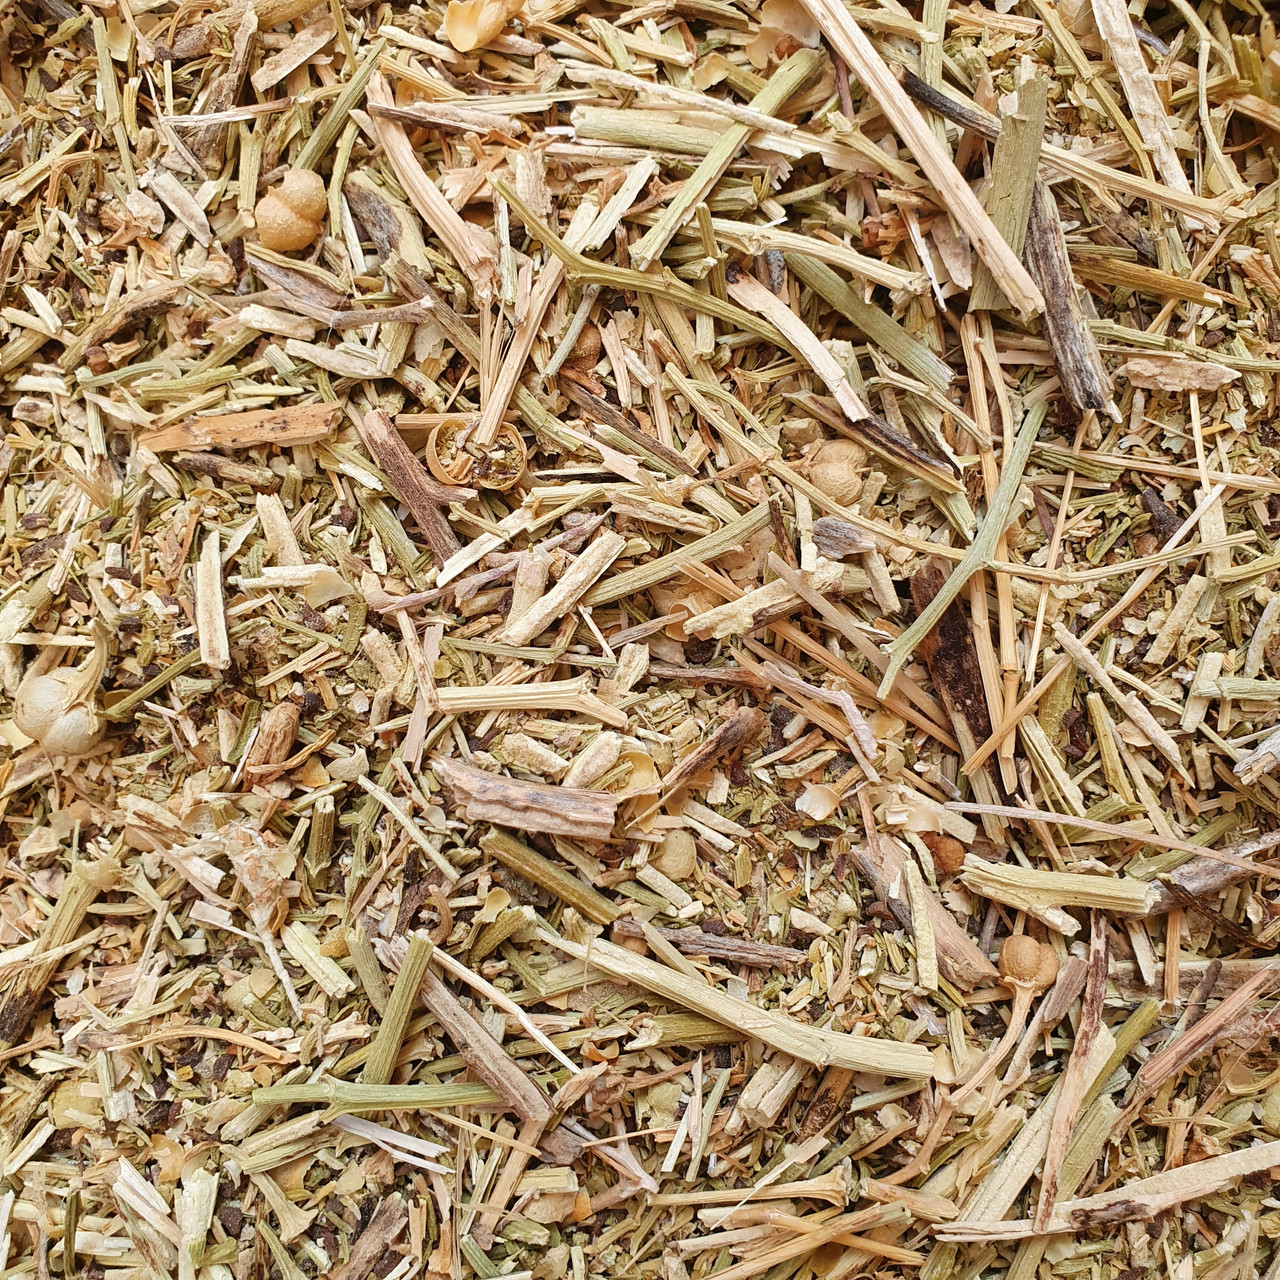 100 г могильник/ребрик/гармала звичайна трава сушена (Свіжий урожай) лат. Péganum hármala